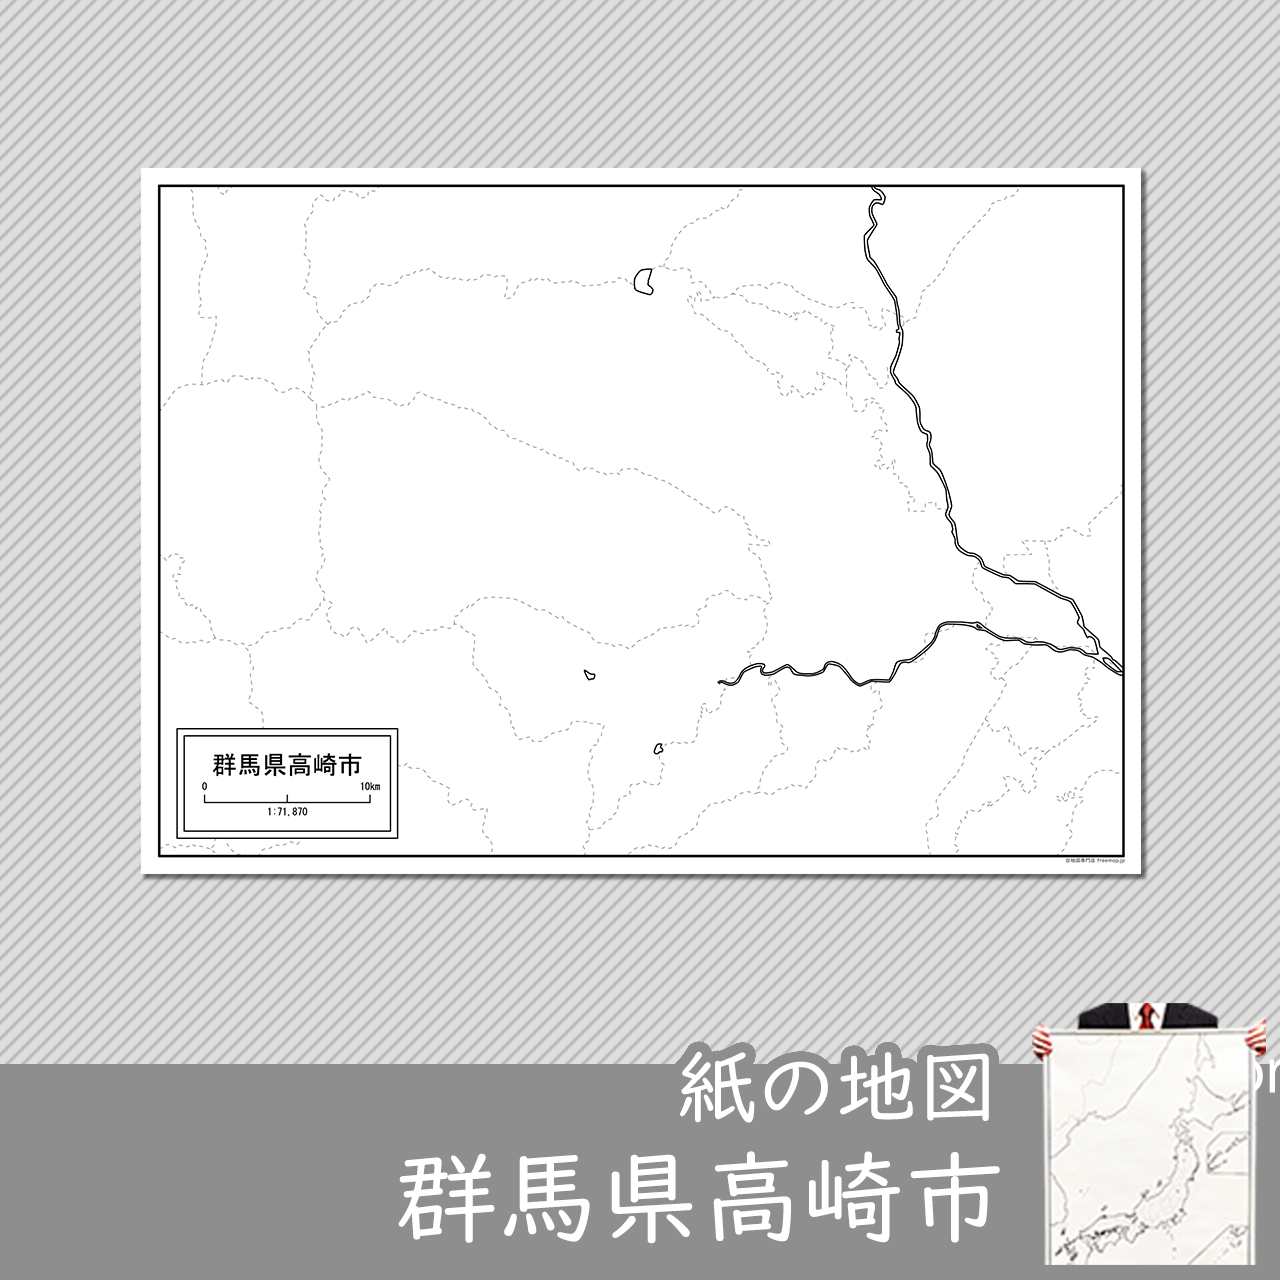 高崎市の紙の白地図のサムネイル